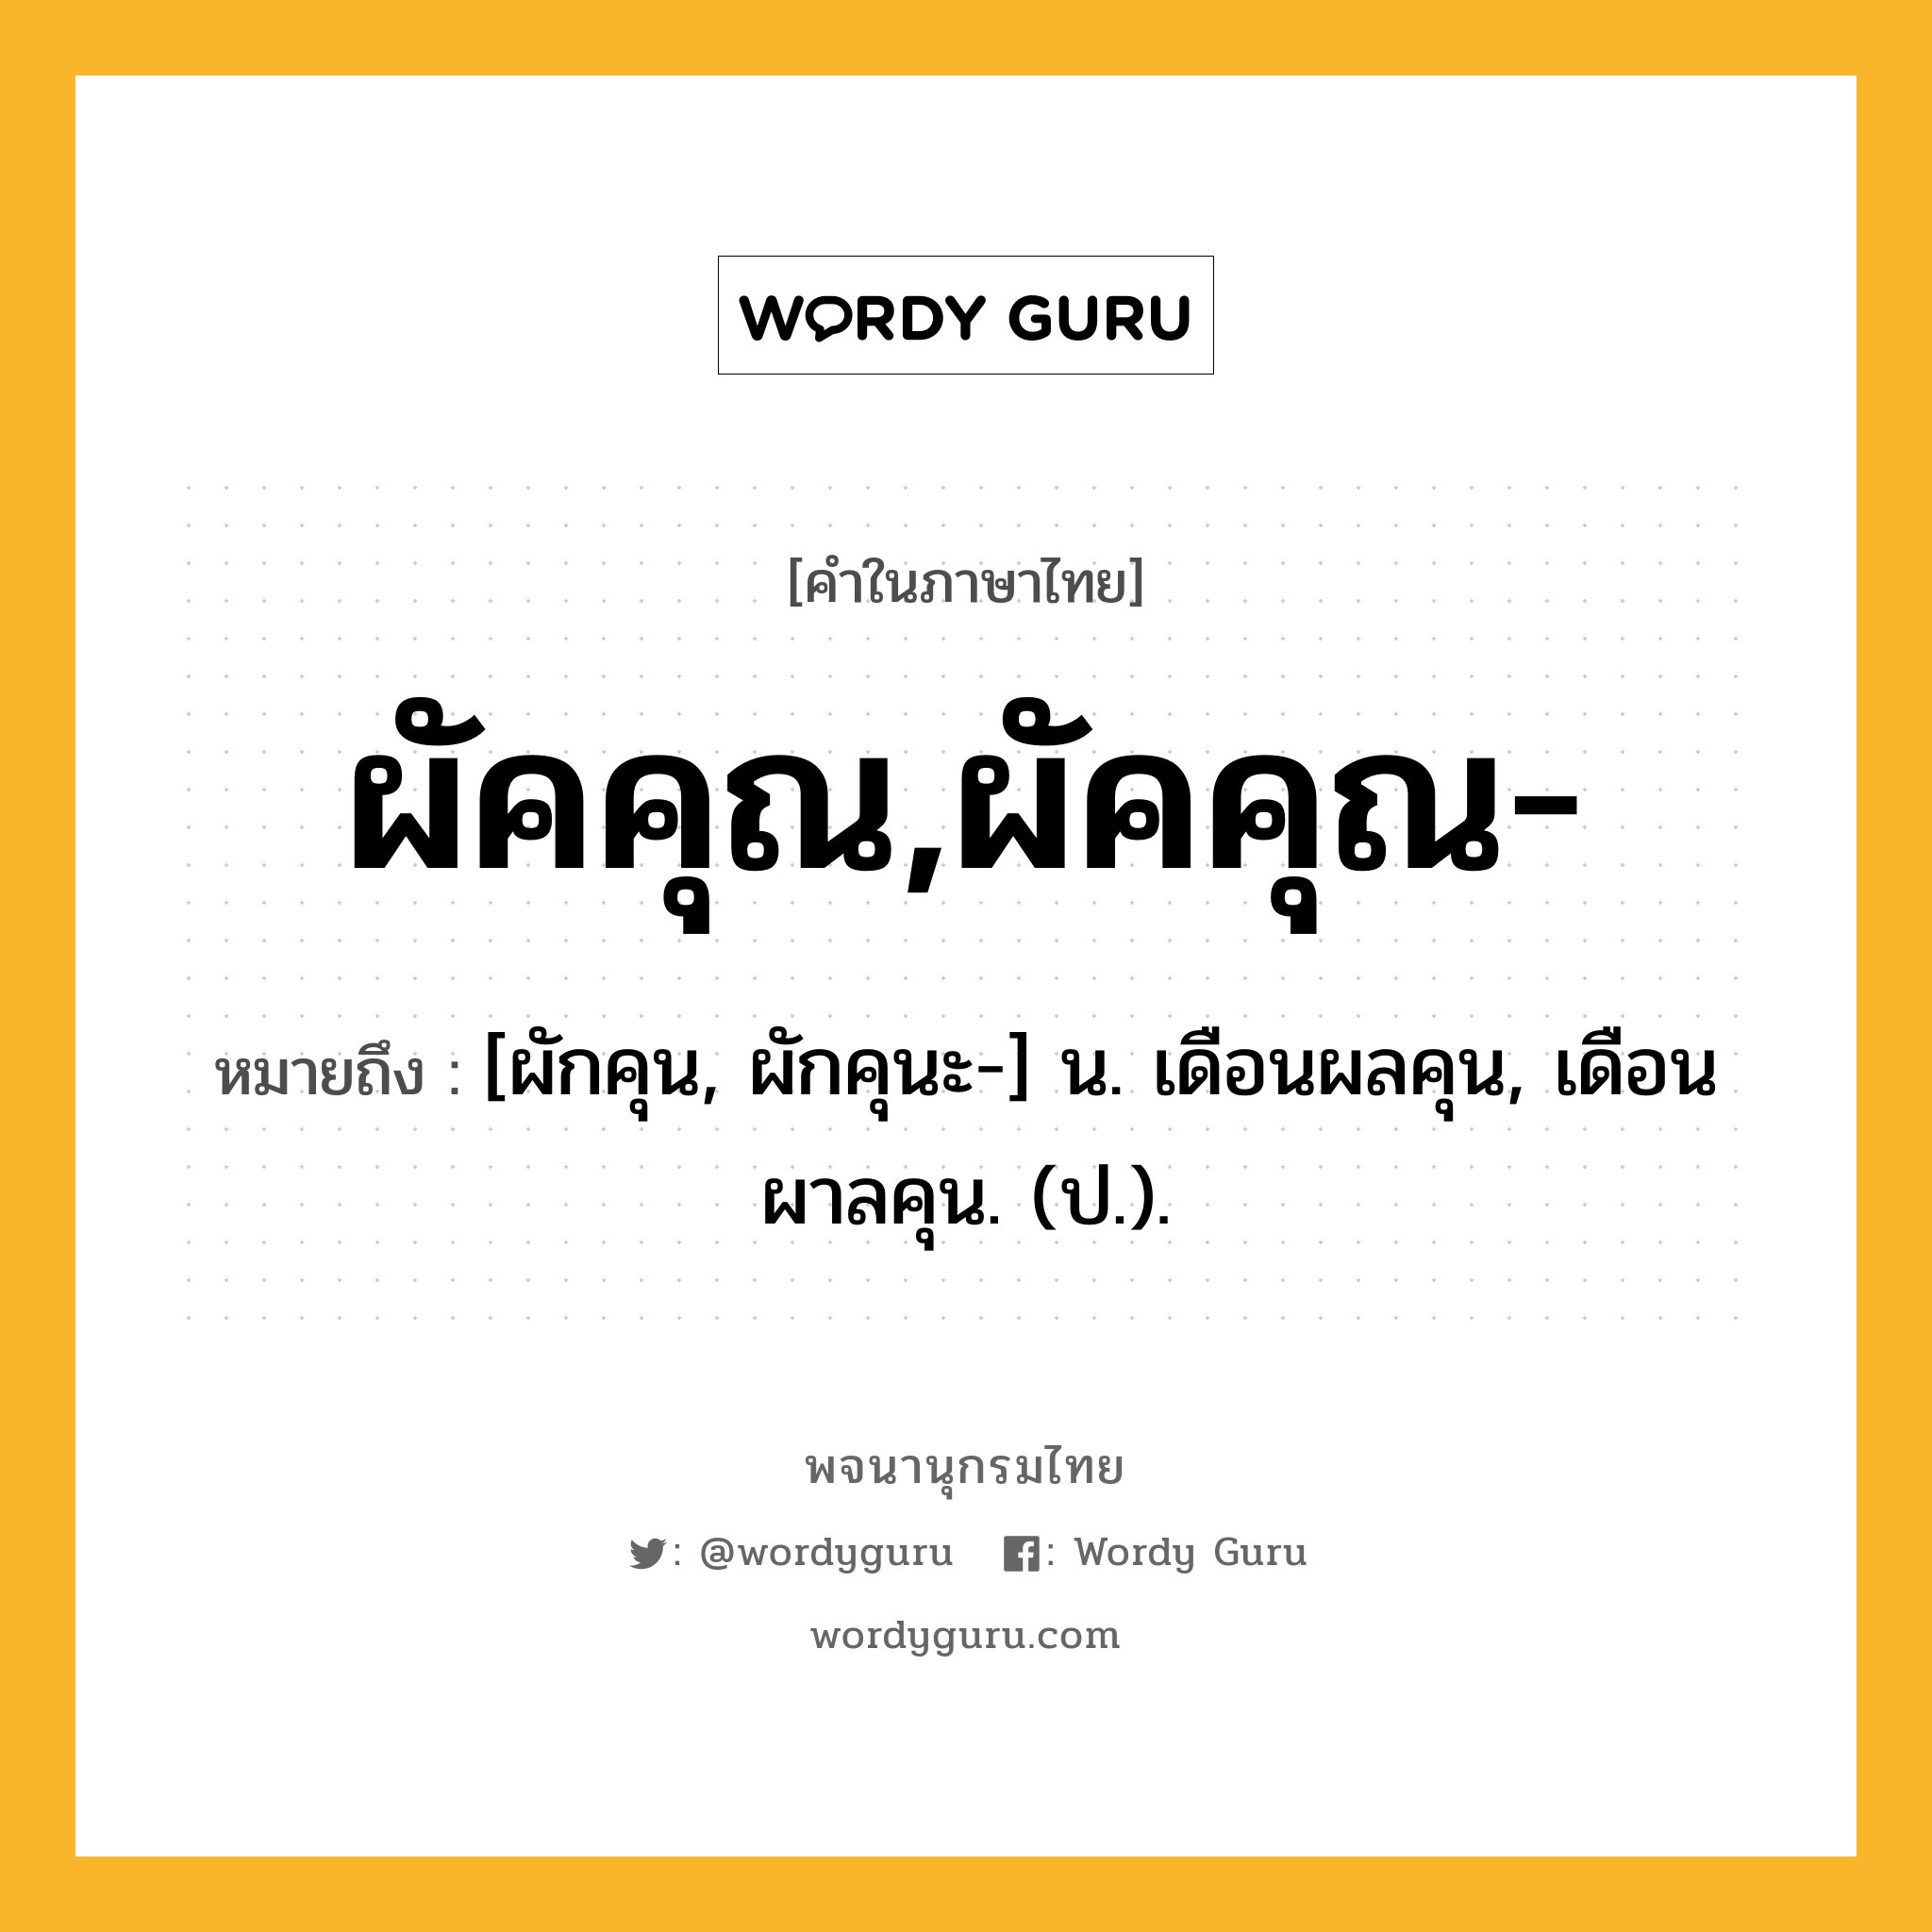 ผัคคุณ,ผัคคุณ- หมายถึงอะไร?, คำในภาษาไทย ผัคคุณ,ผัคคุณ- หมายถึง [ผักคุน, ผักคุนะ-] น. เดือนผลคุน, เดือนผาลคุน. (ป.).